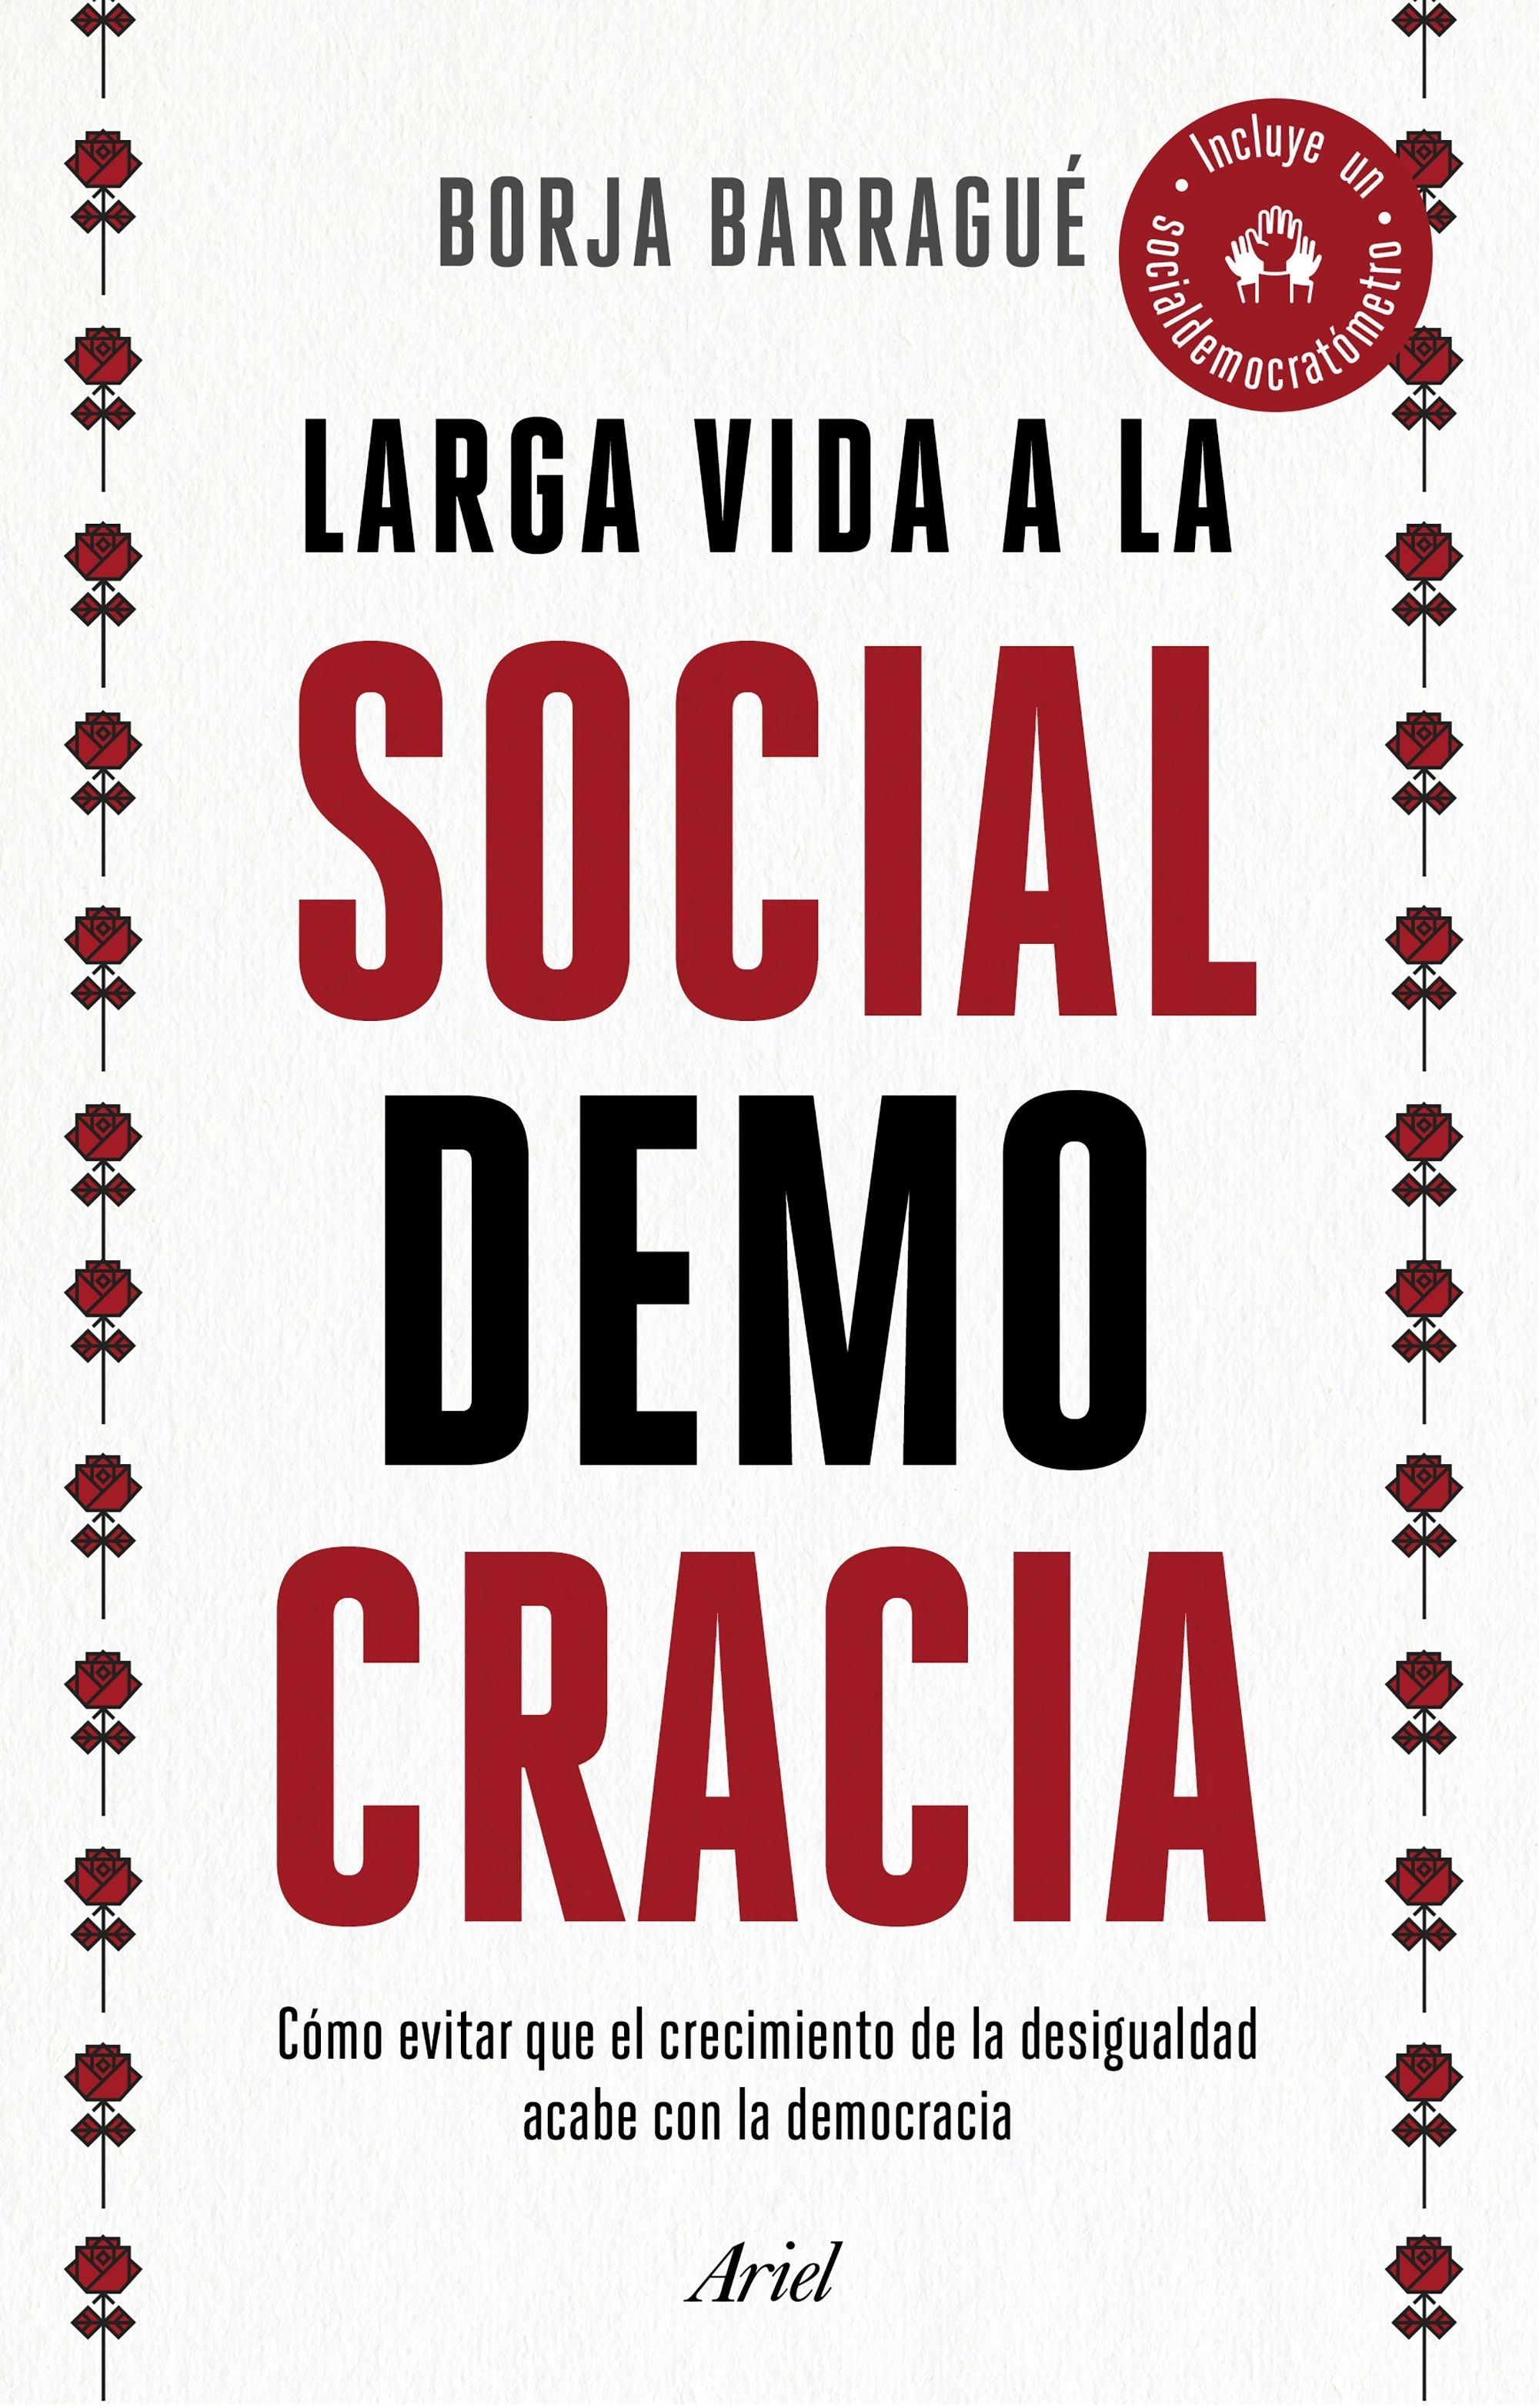 Las claves para entender el declive de la socialdemocracia (Ed. Ariel)